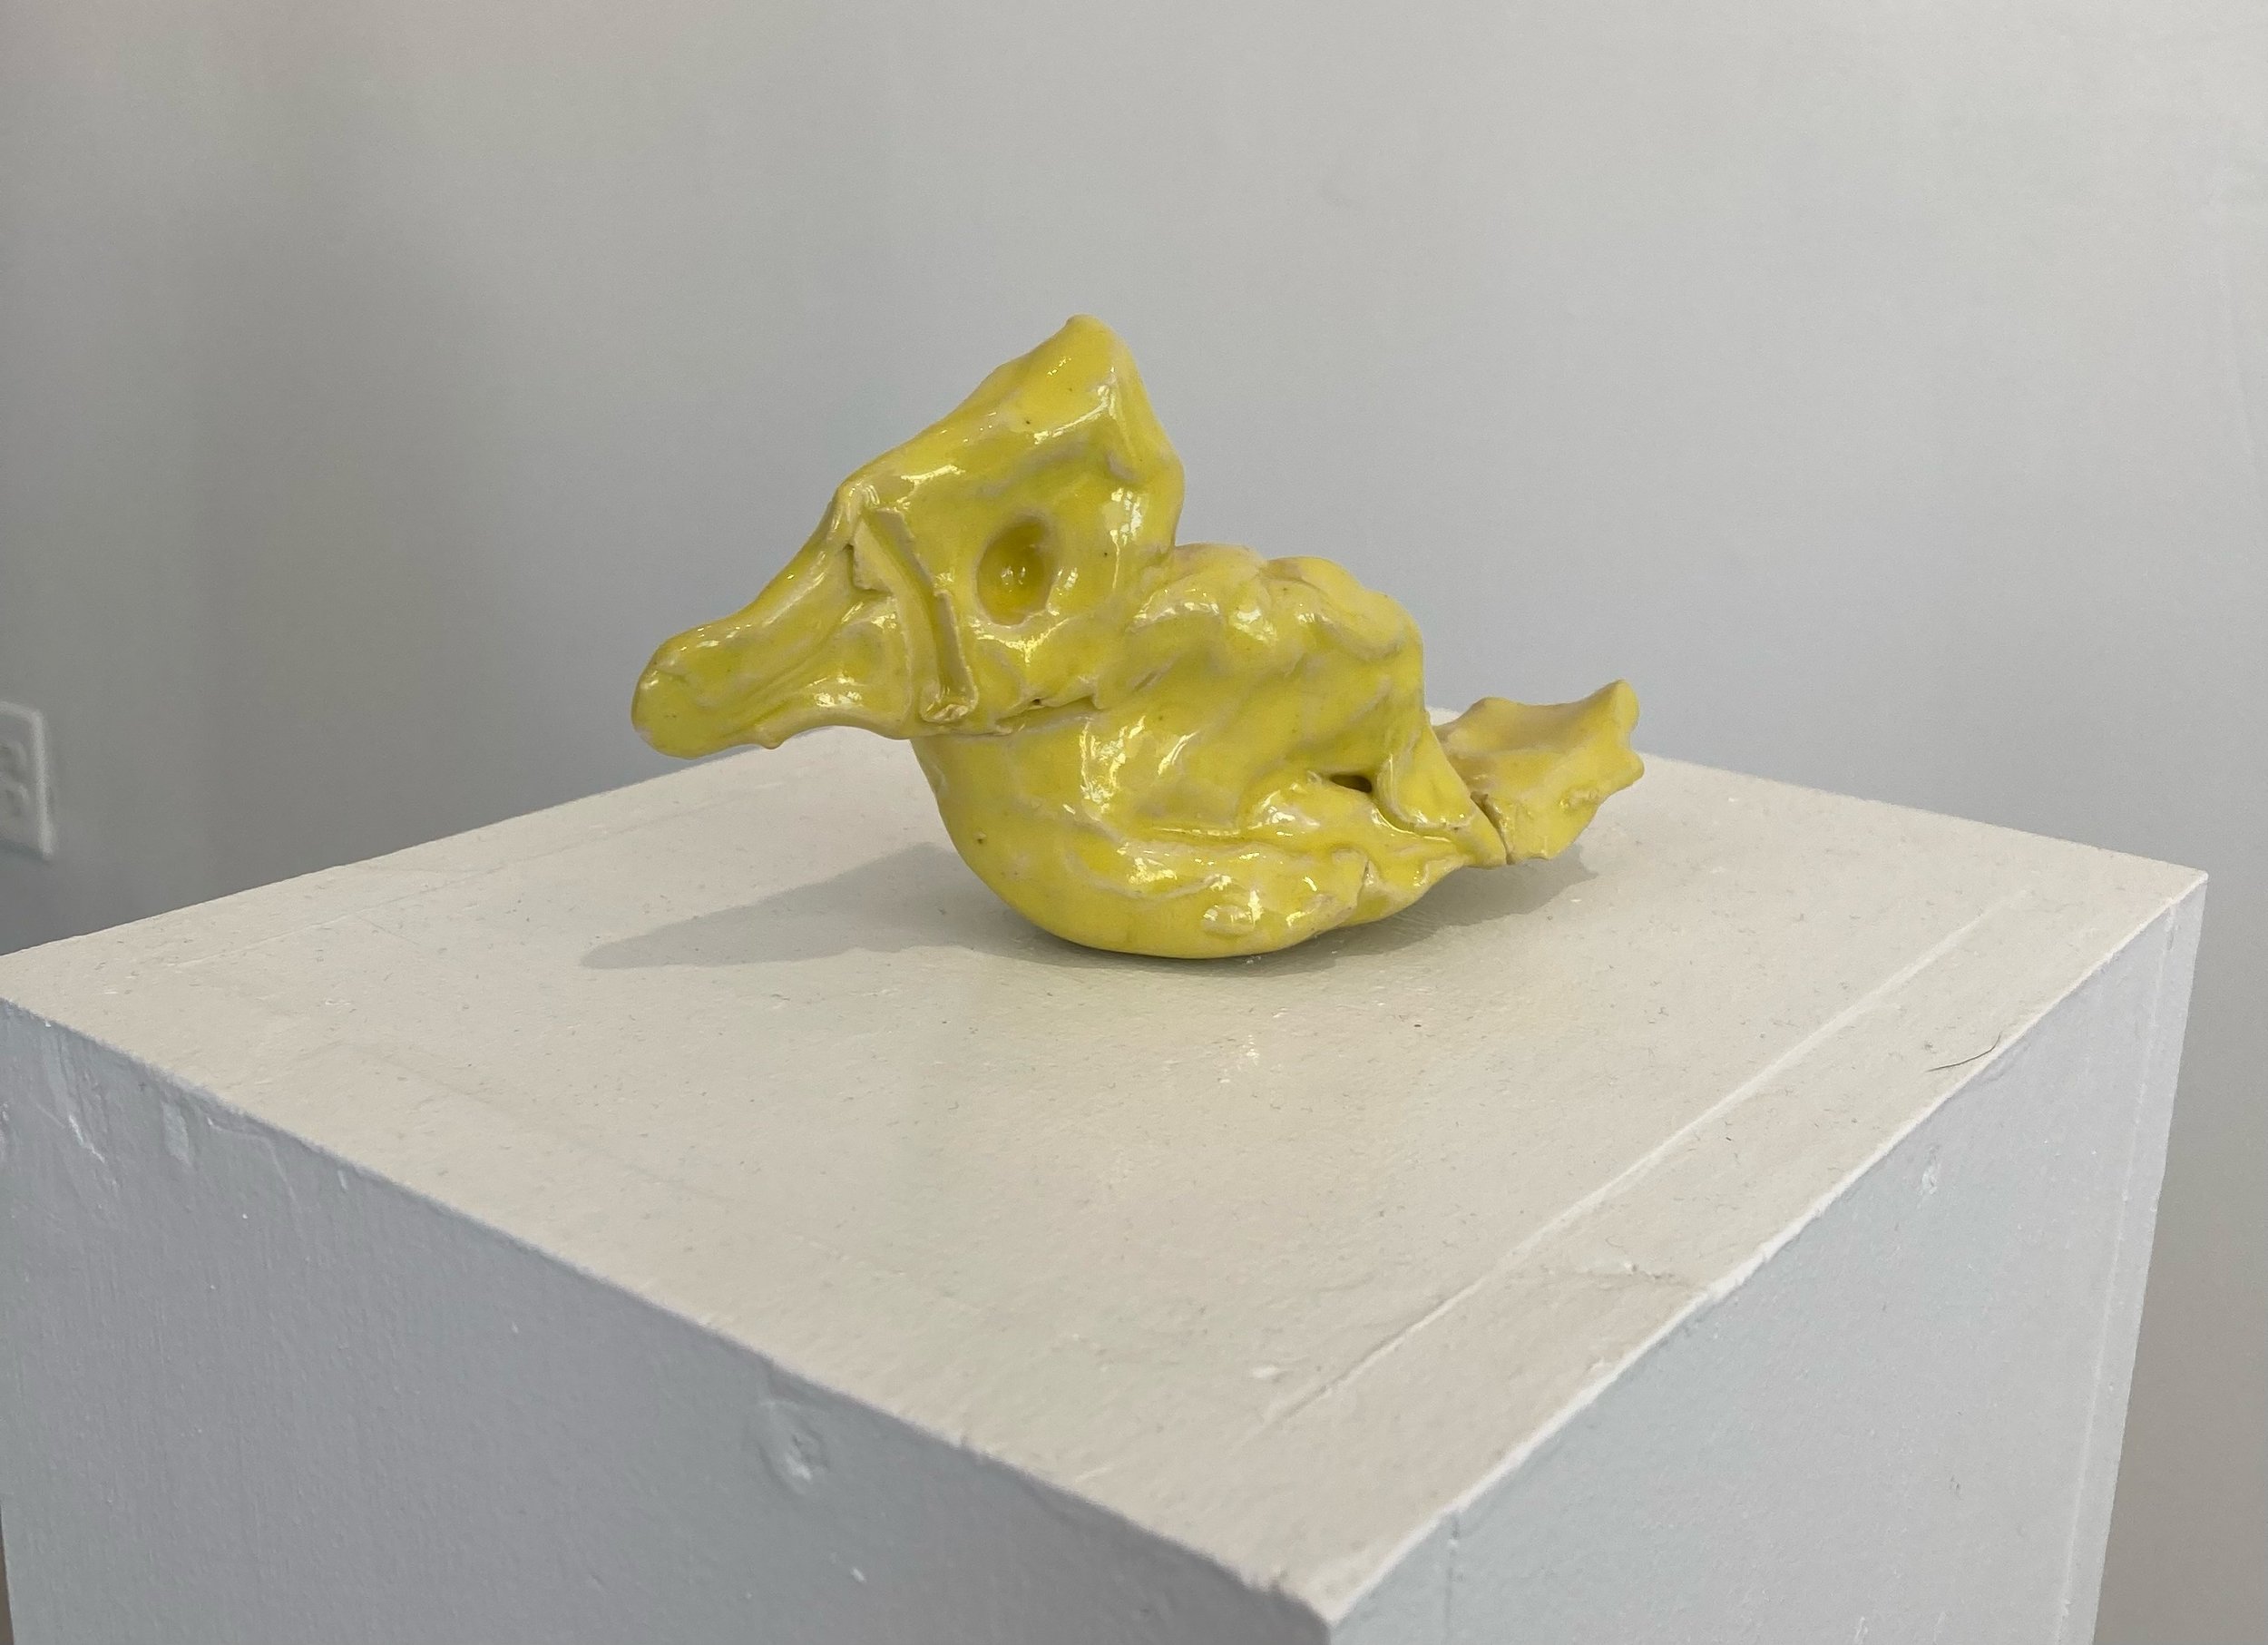  Canary, Glazed Ceramic, 3” X 6” X 1”, 2021 